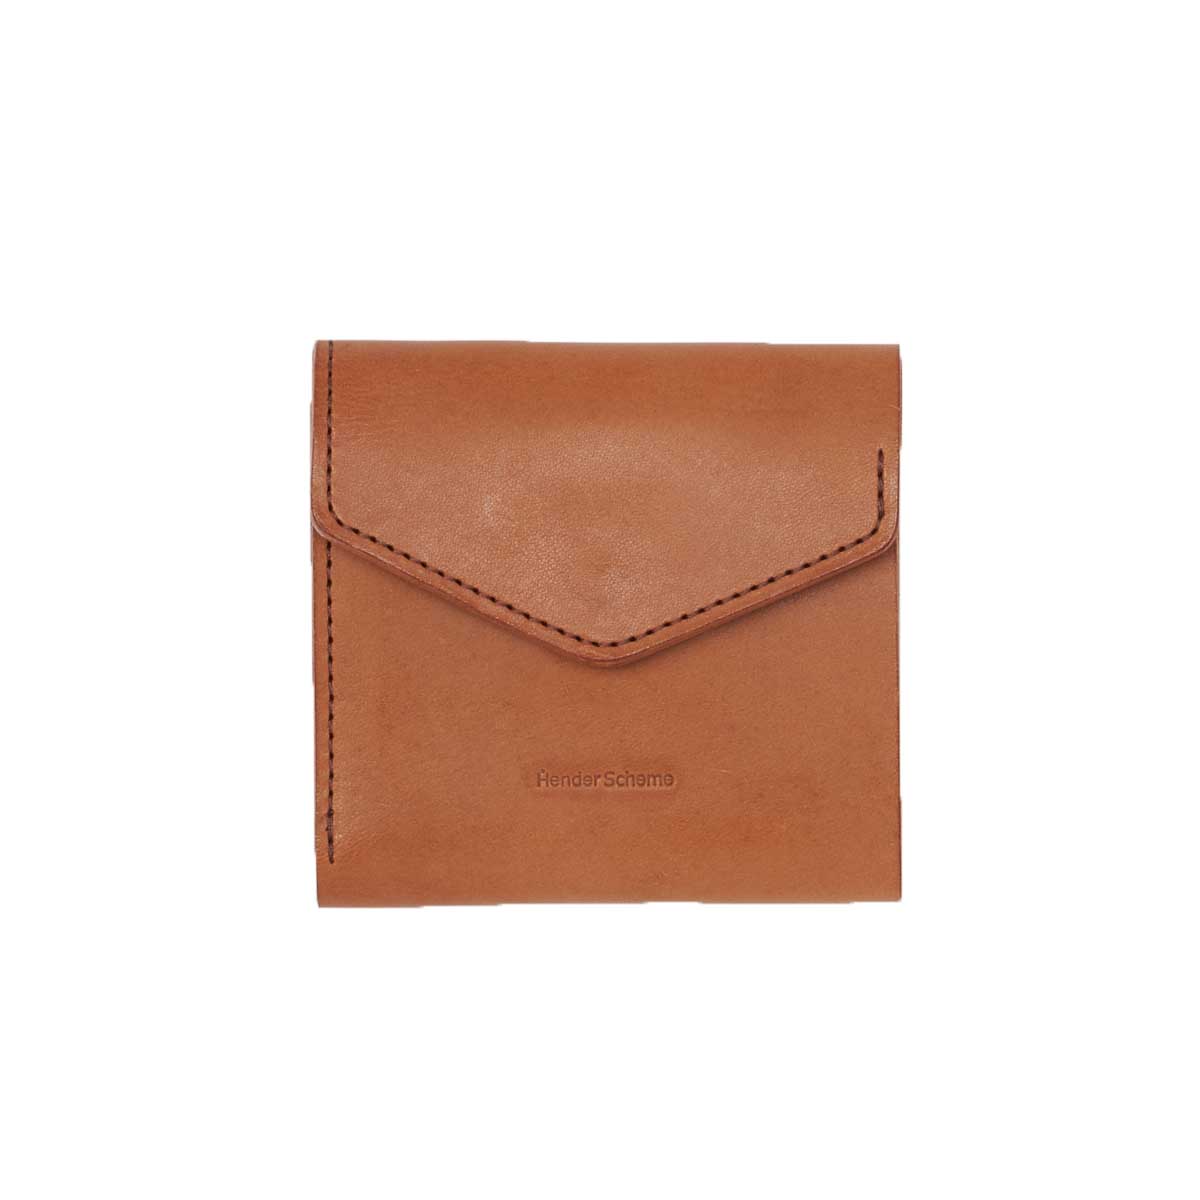 Hender Scheme / flap wallet Brown